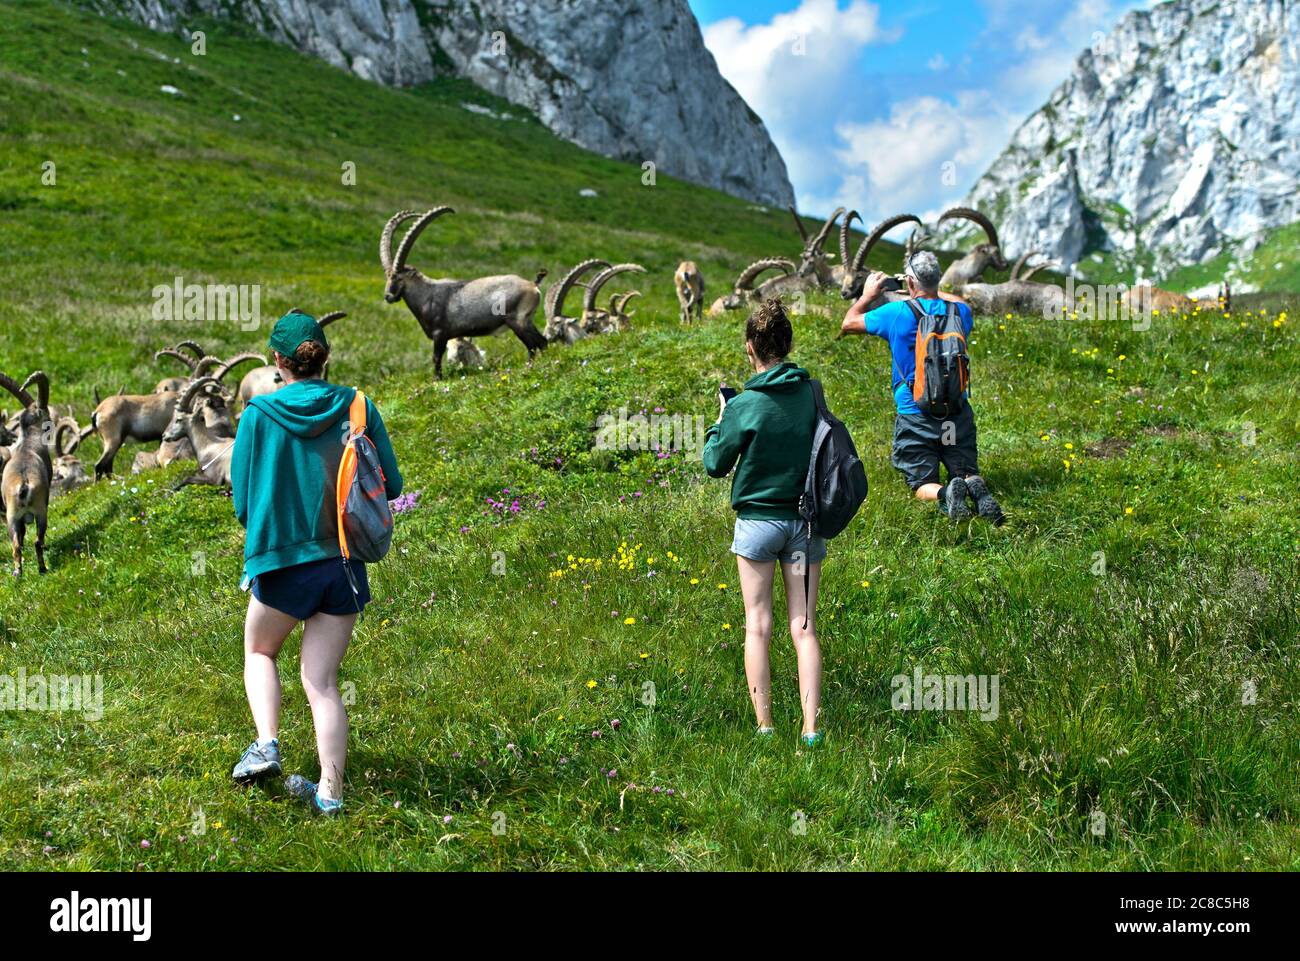 Gardez la distance, randonneurs prenant des photos d'un troupeau d'ibex sauvage, Chablais, France Banque D'Images